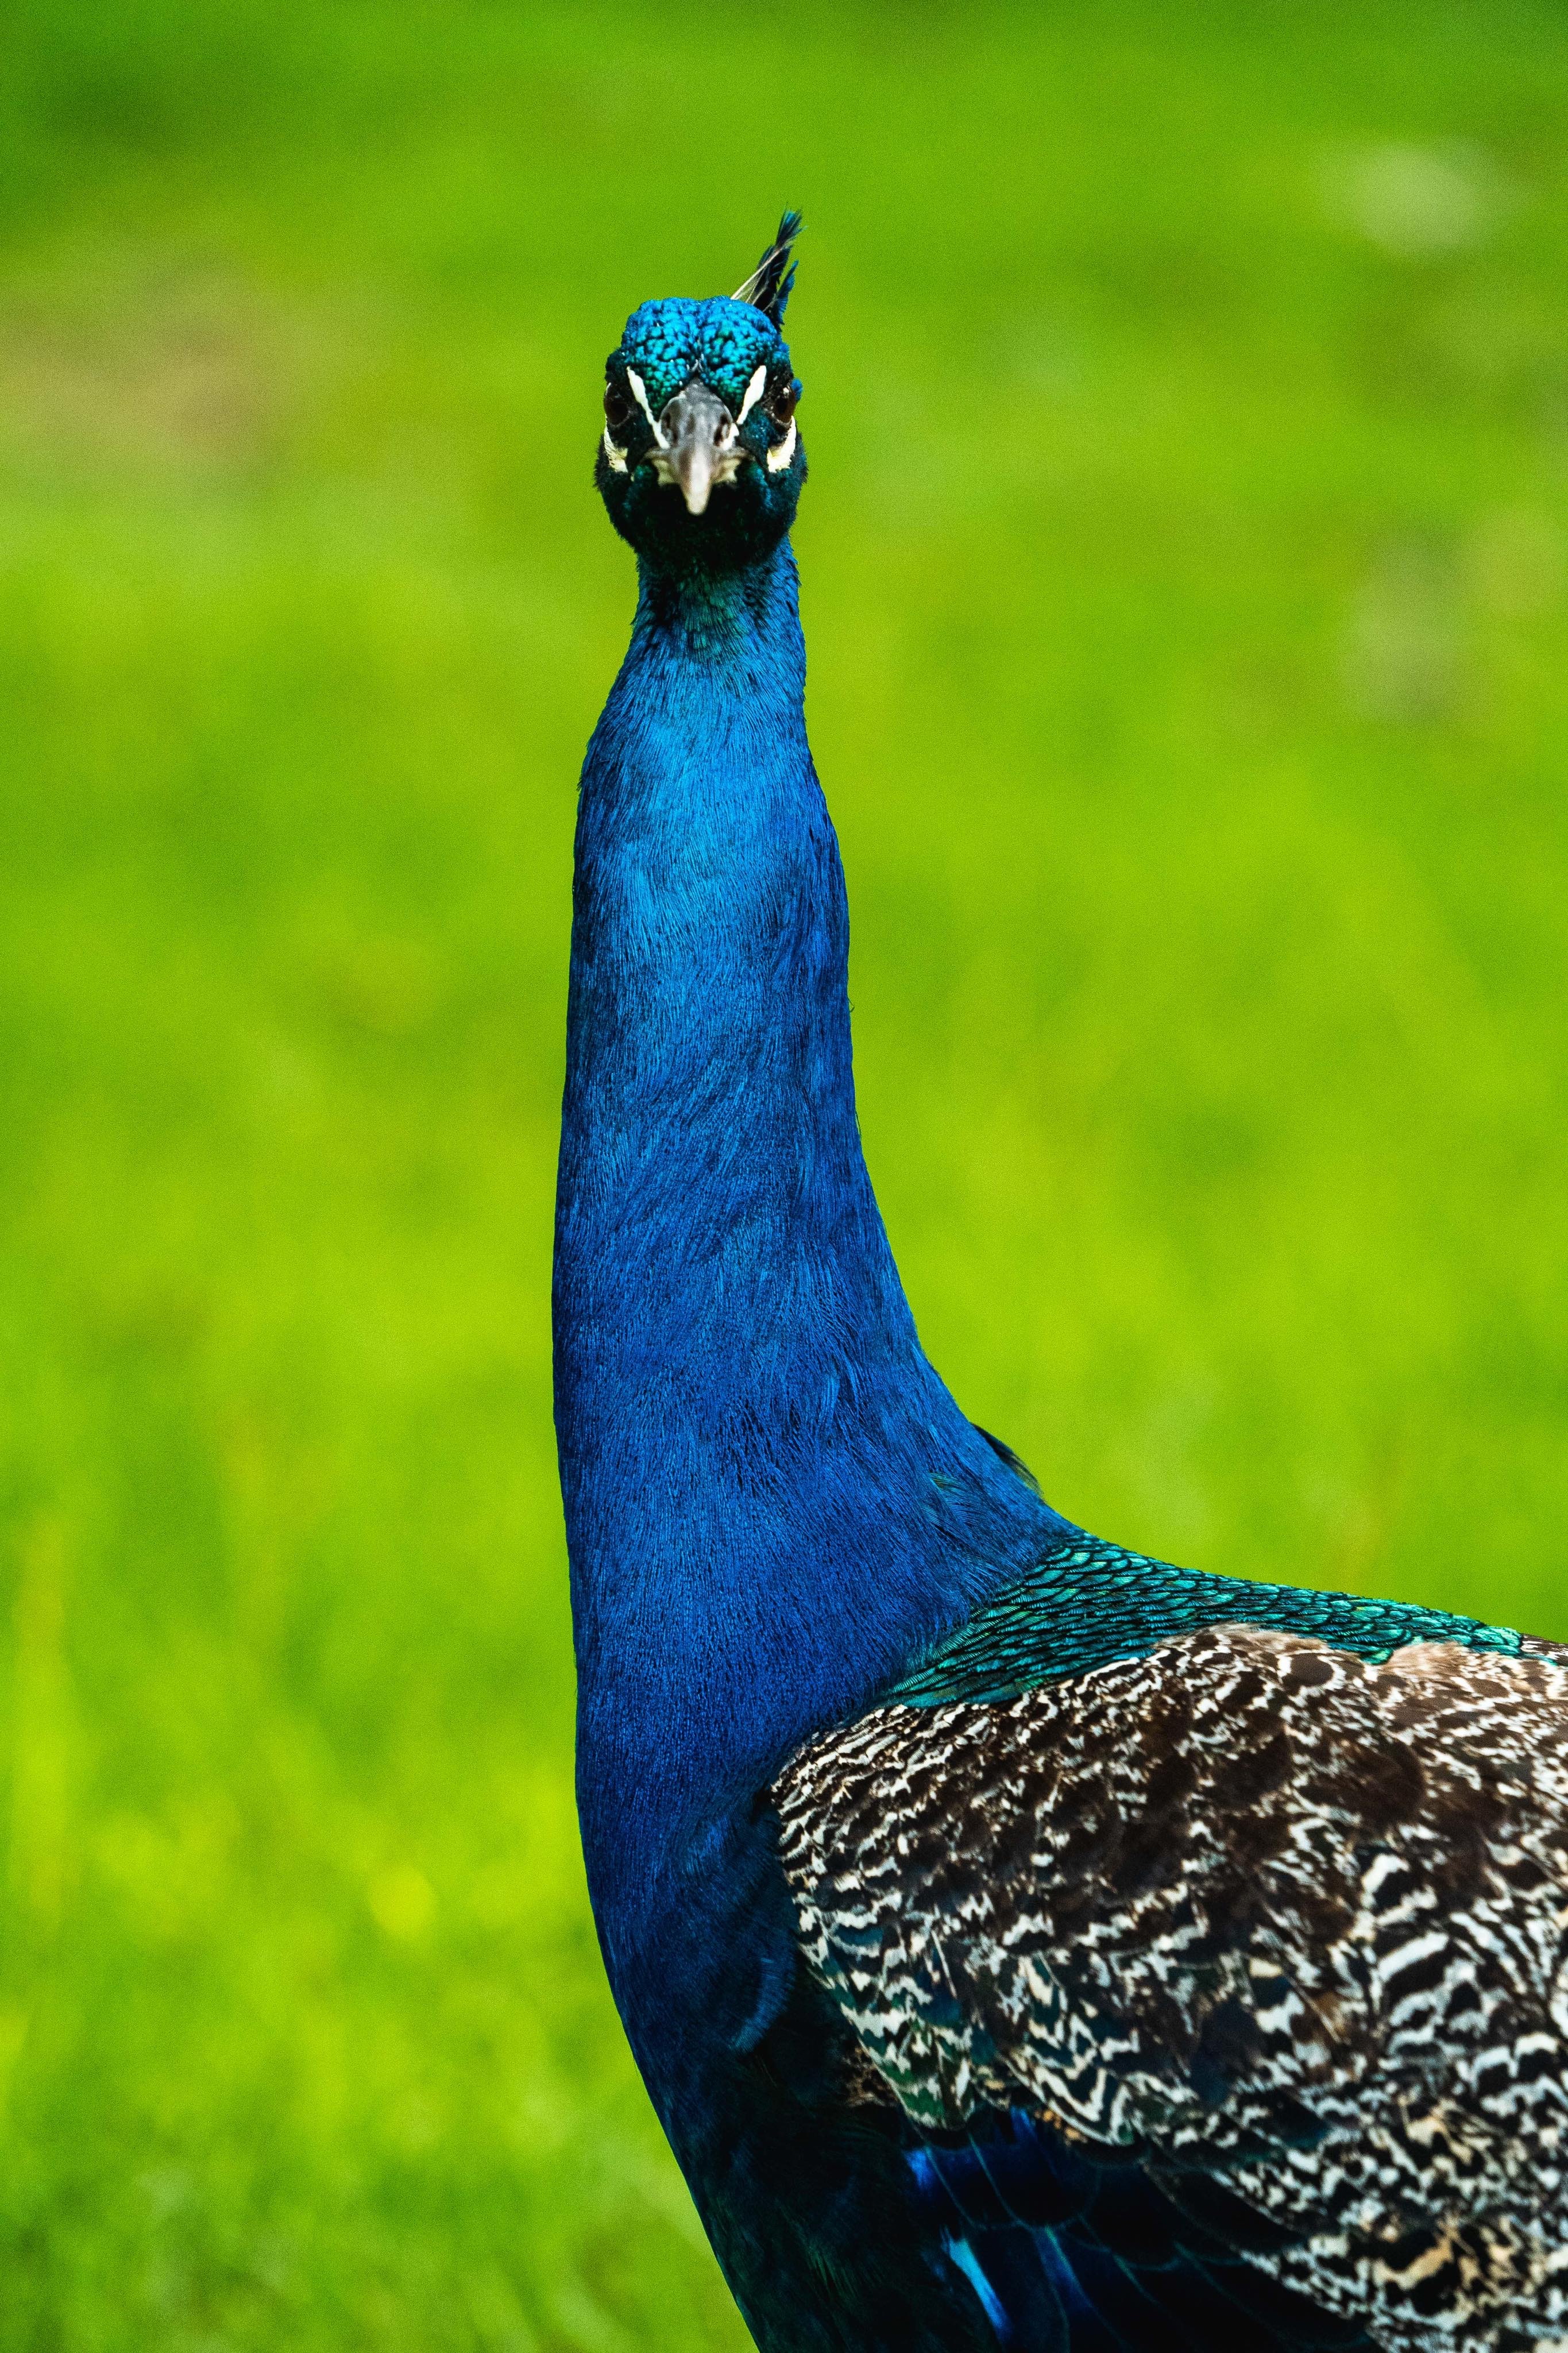 peacock, animals, feather, bird, beak, pattern